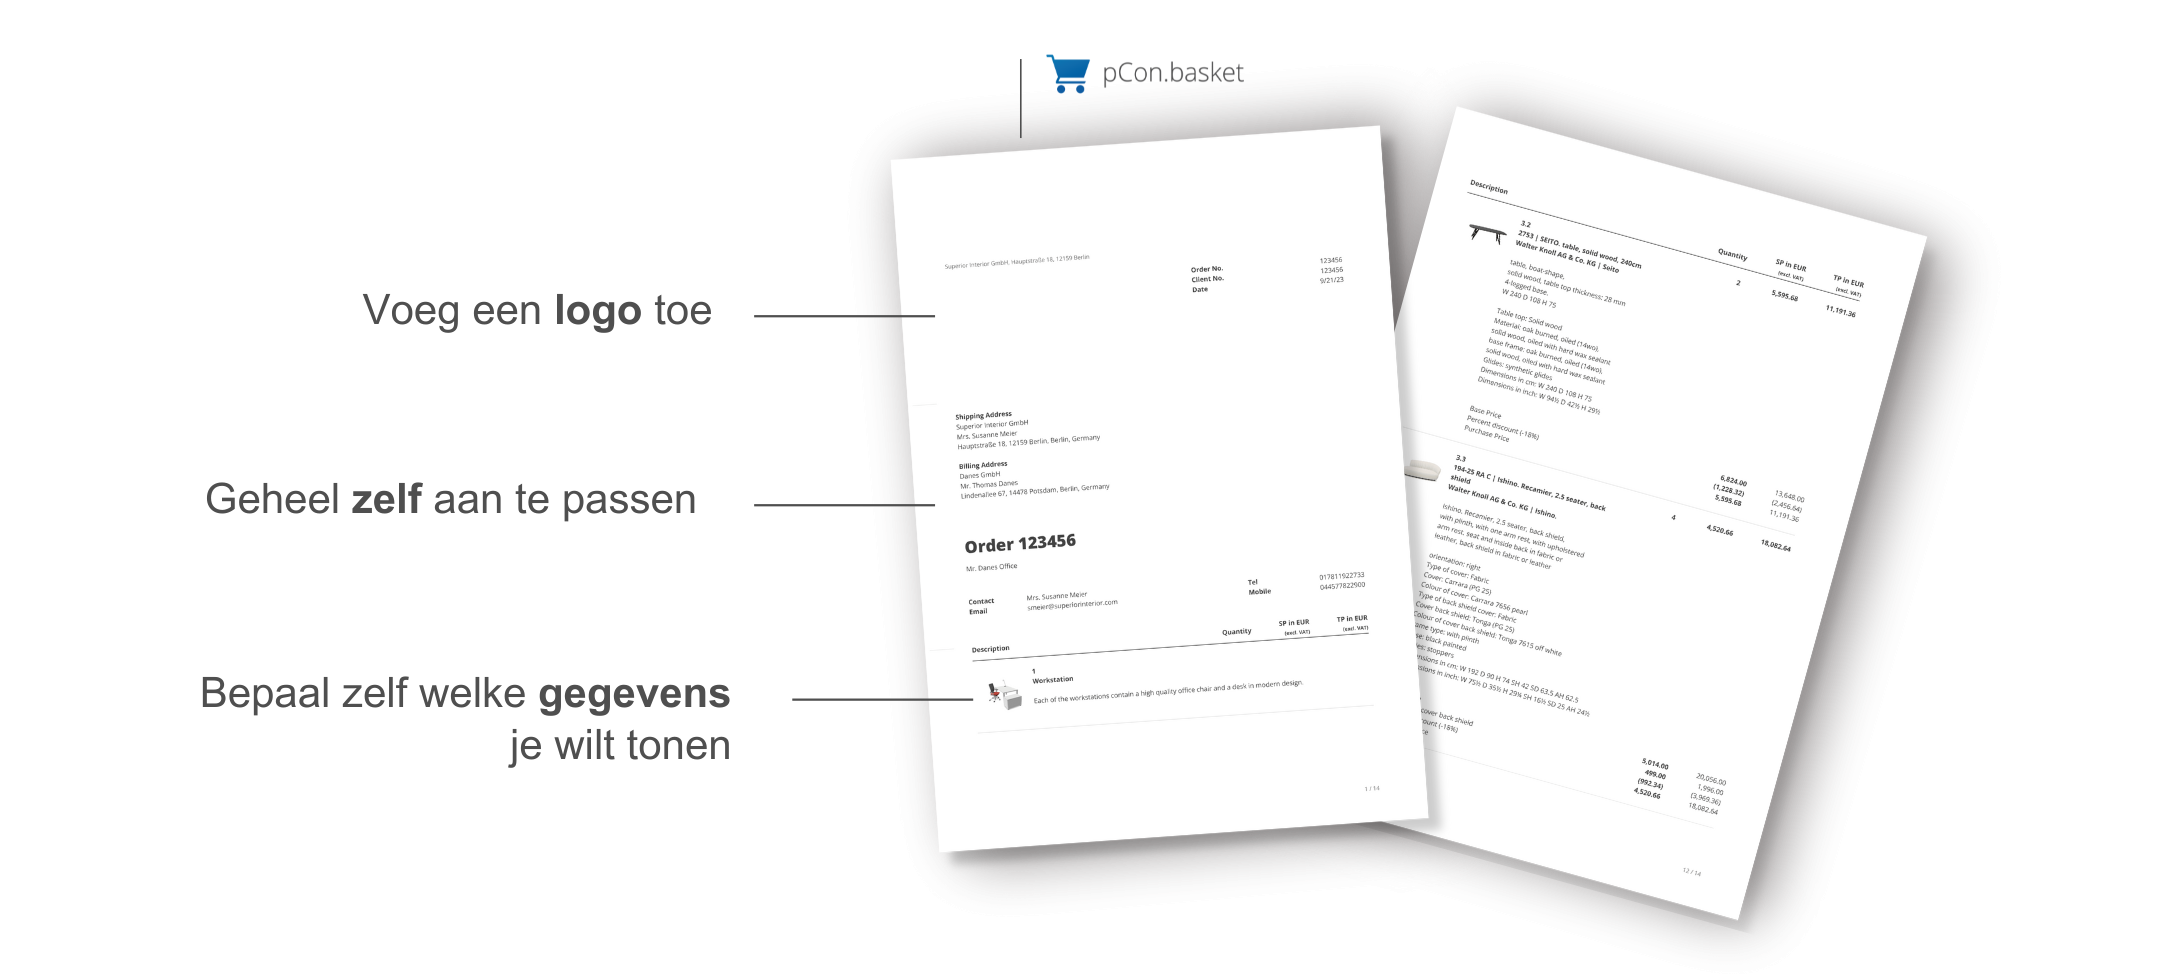 2 pdf documenten met een offerte en enkele voordelen